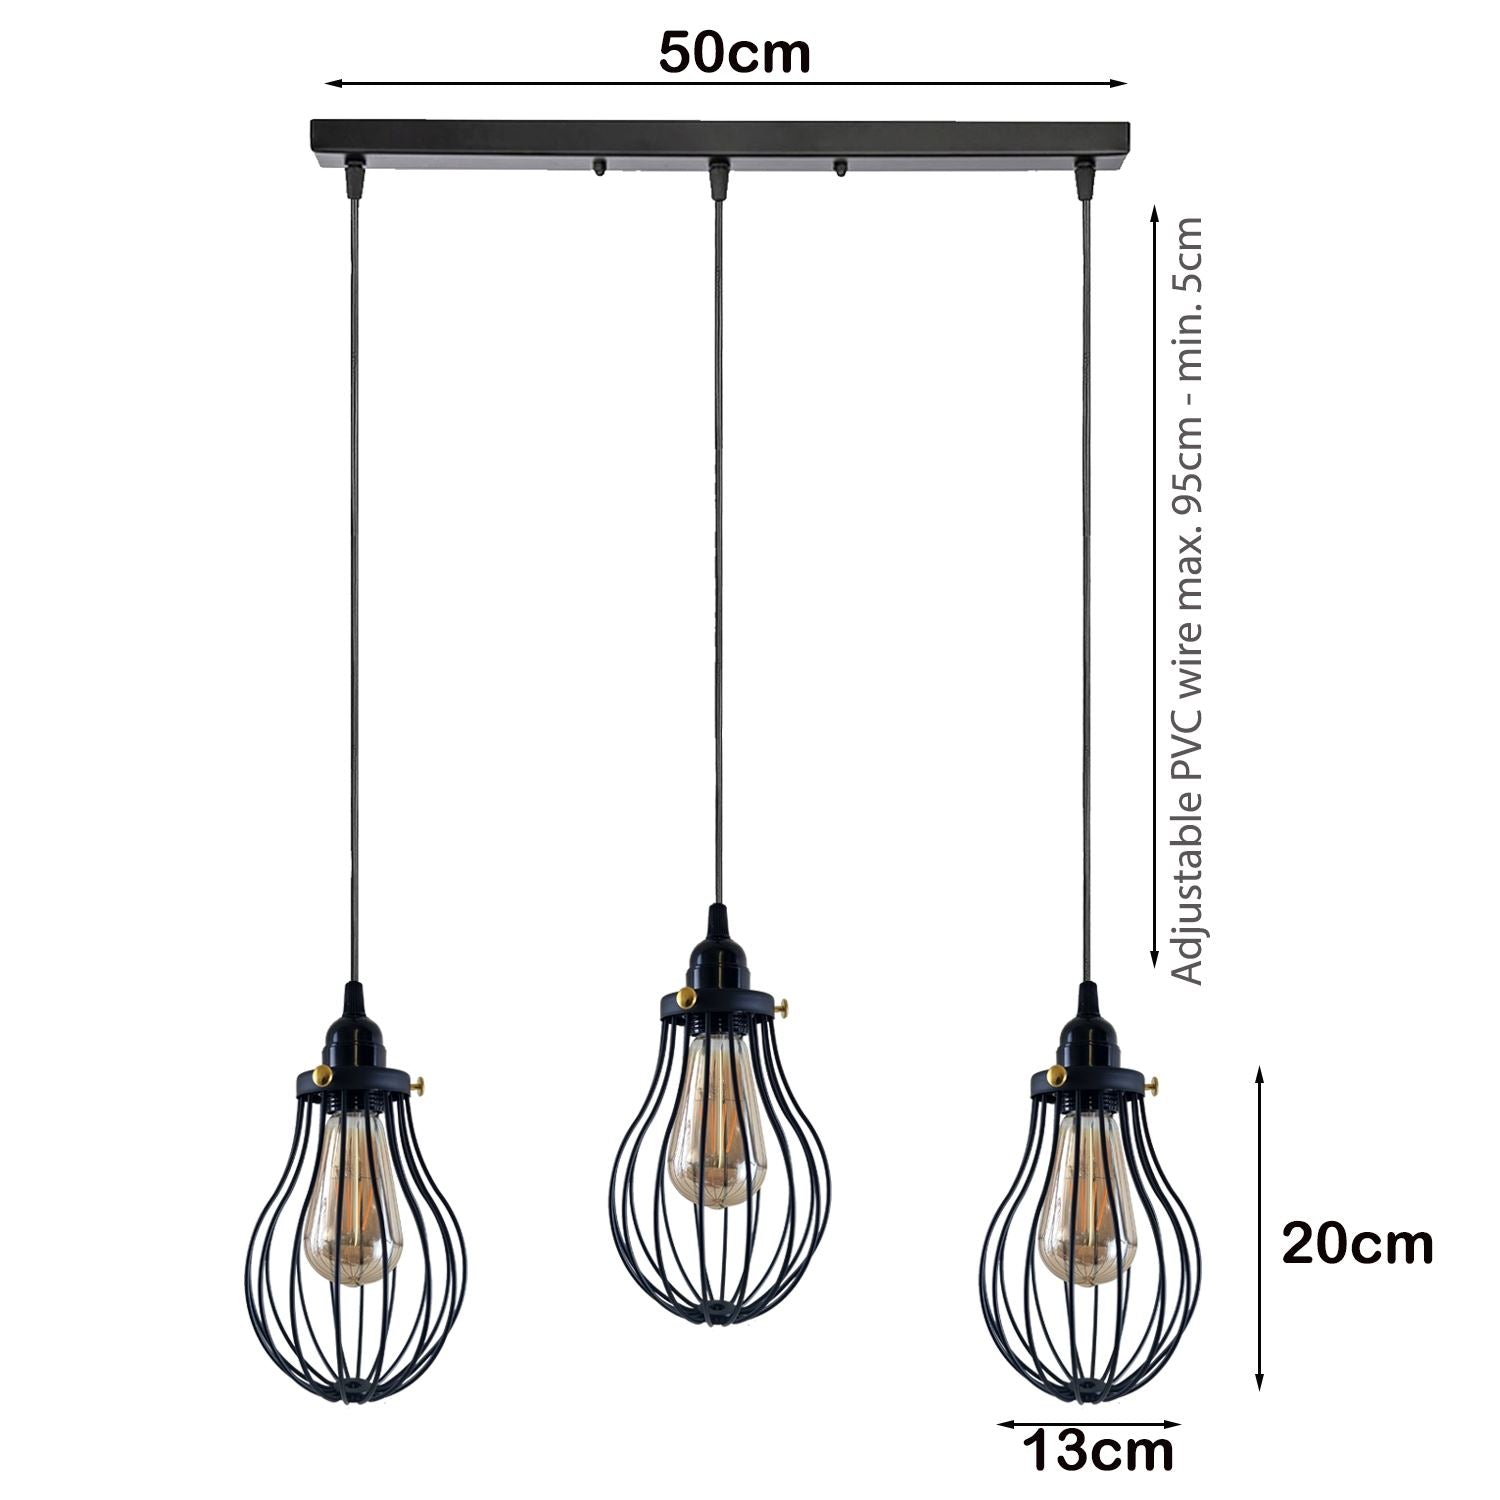 Retro Industrial Black Indoor Hanging Adjustable Pendant Light Big Vase Cage Ceiling Chandelier~3398 - LEDSone UK Ltd